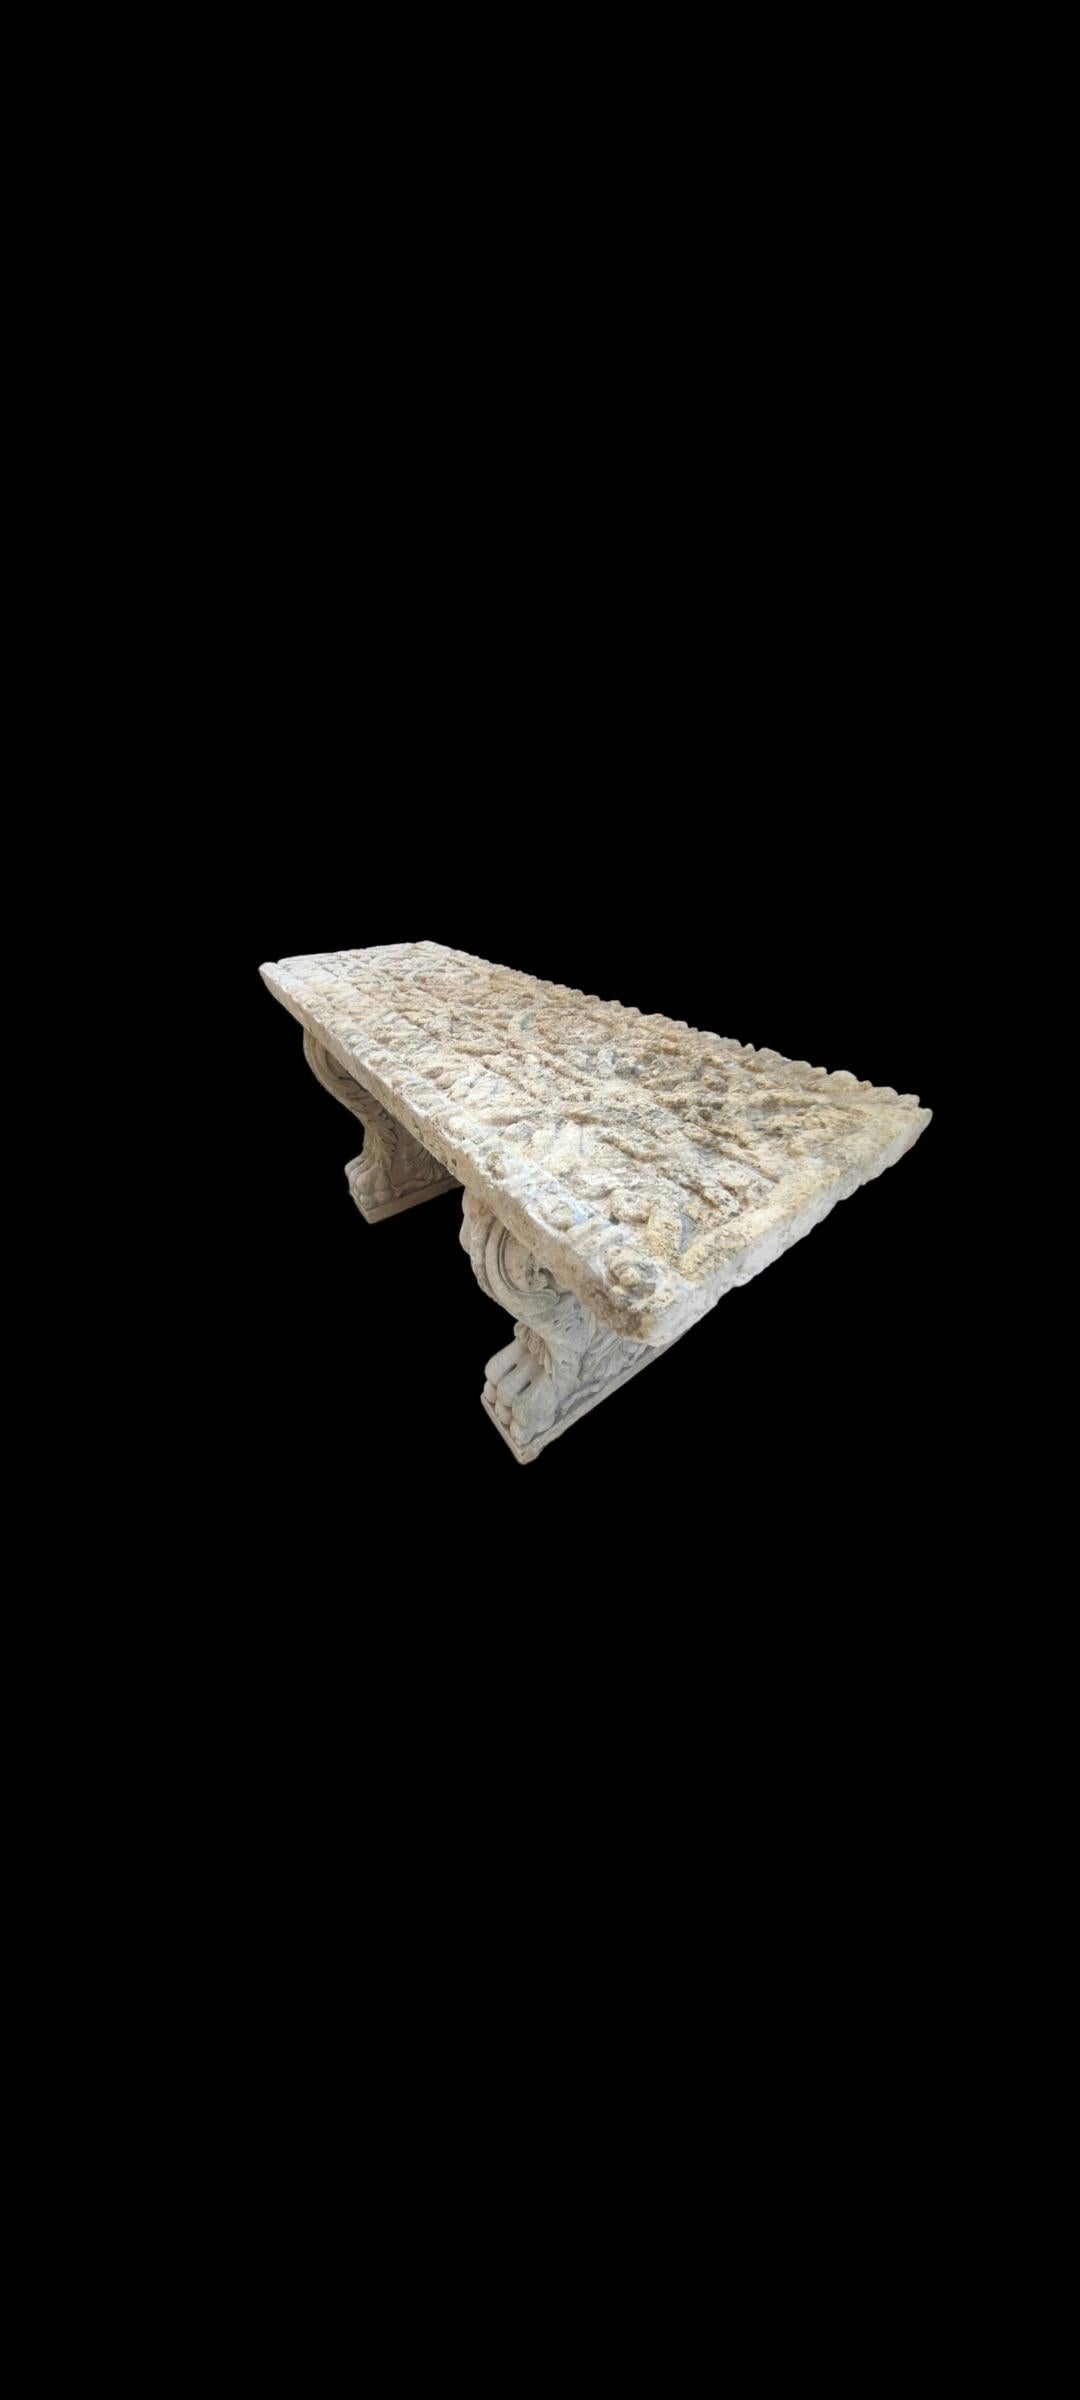 Il s'agit de l'une des deux tables en pierre calcaire du XVIIe siècle, extrêmement rares et magnifiquement sculptées à la main, que nous avons récemment récupérées dans un château en France. 

Le plateau de table semi-incrusté, très détaillé et